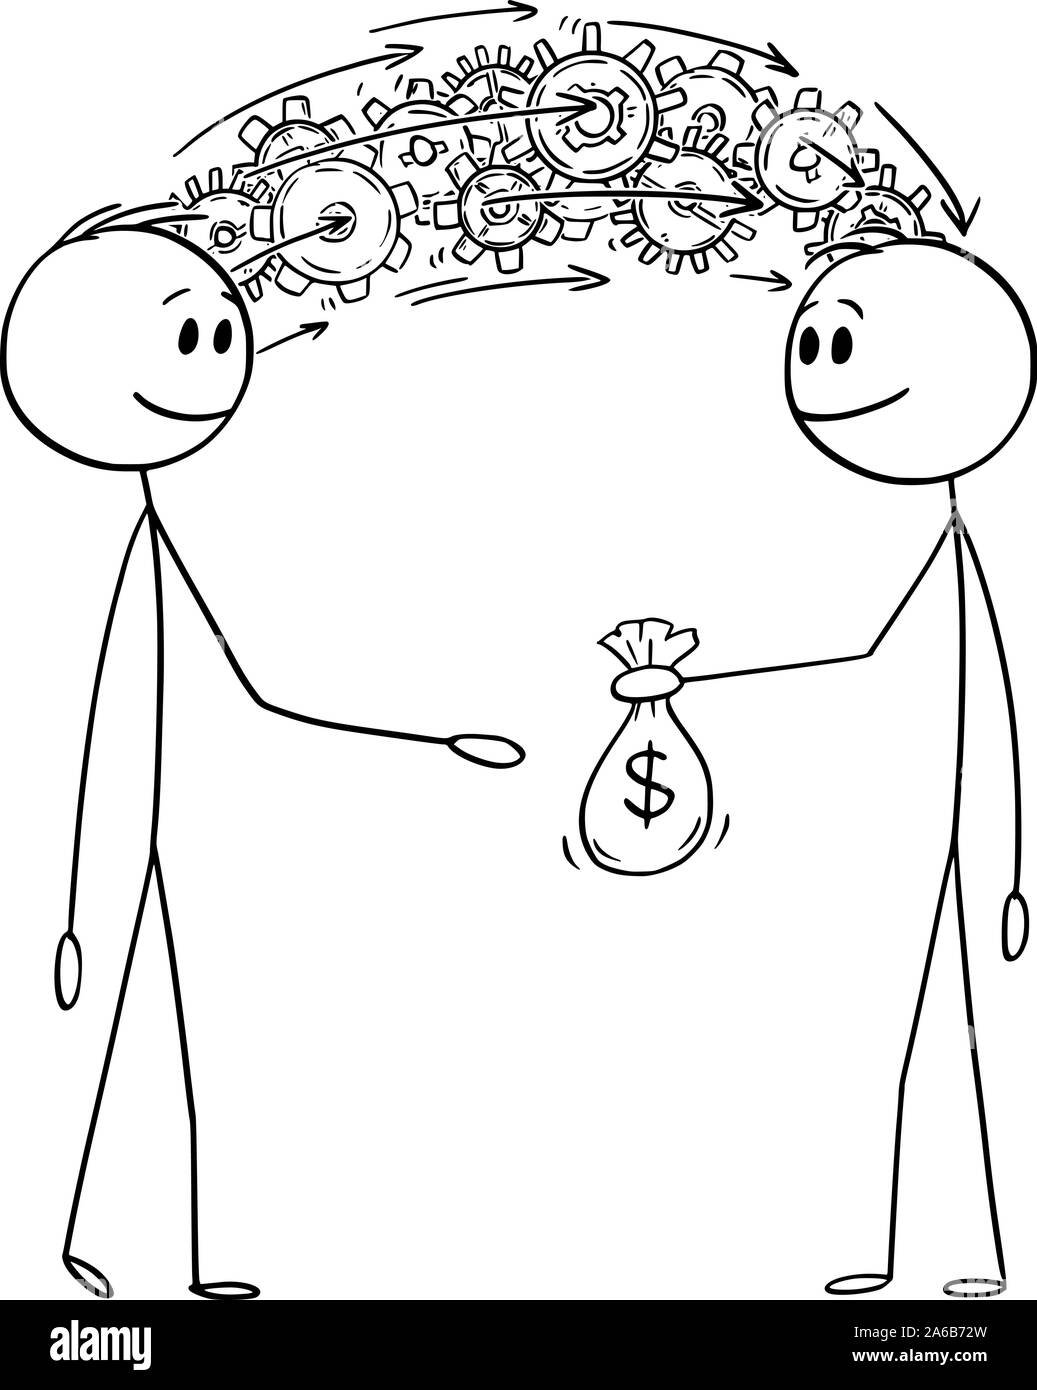 Vektor cartoon Strichmännchen Zeichnen konzeptionelle Darstellung der Mann oder Geschäftsmann seine Weitergabe von Wissen und Informationen für Geld. Stock Vektor